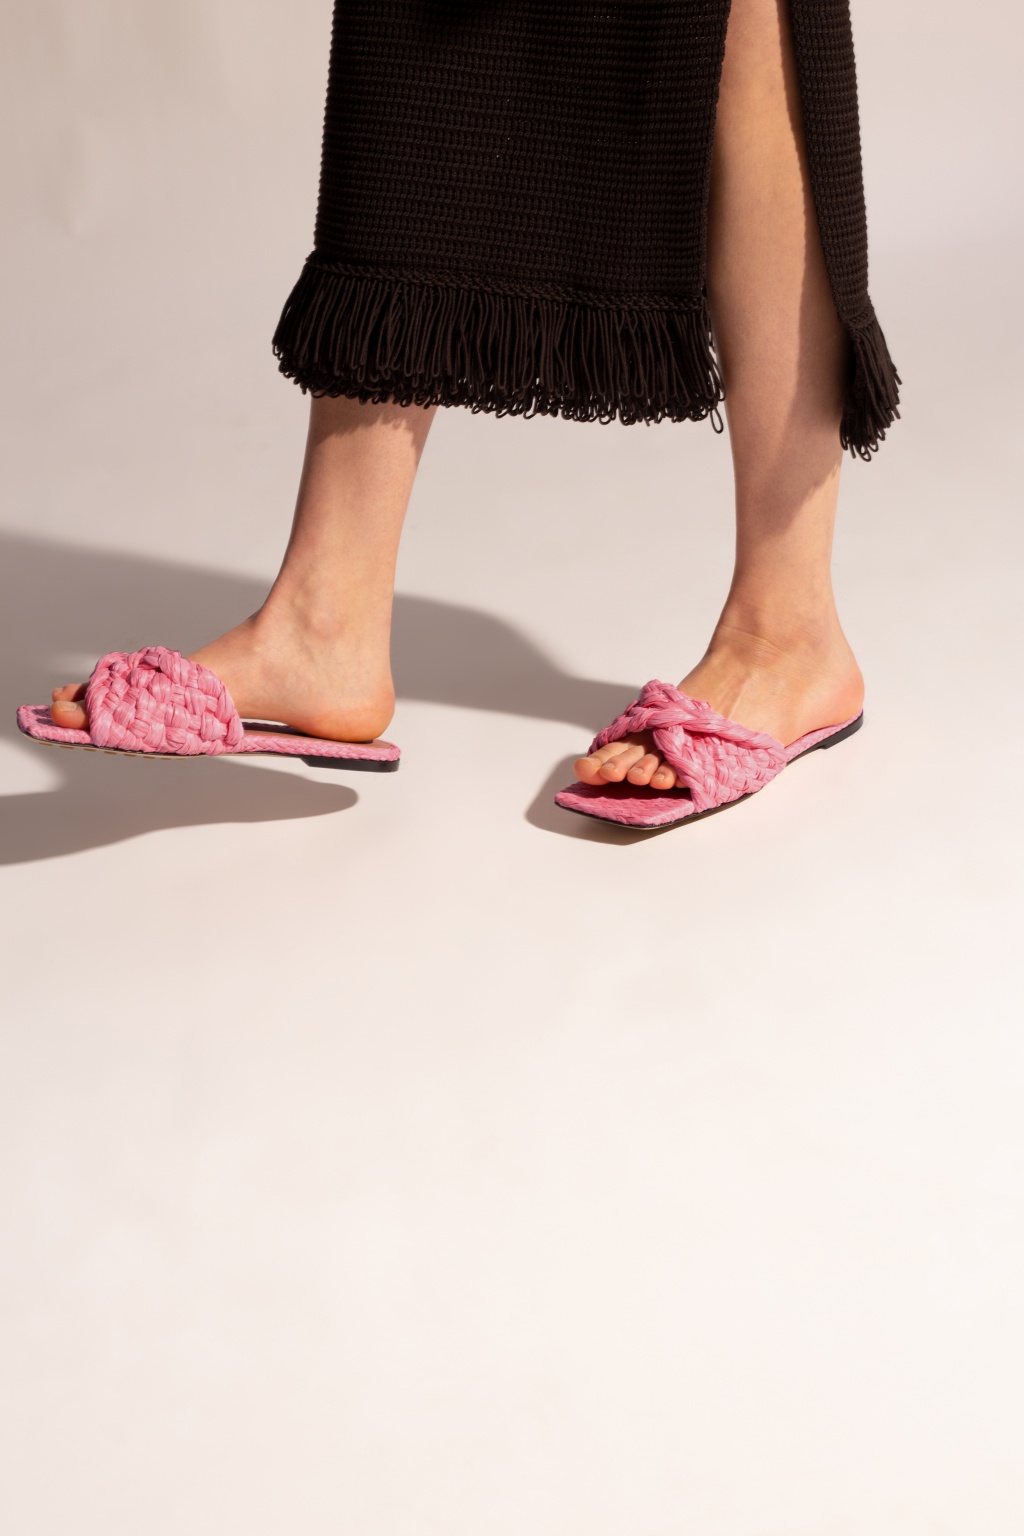 Bottega Veneta Women's Patch Mule Flat Sandals